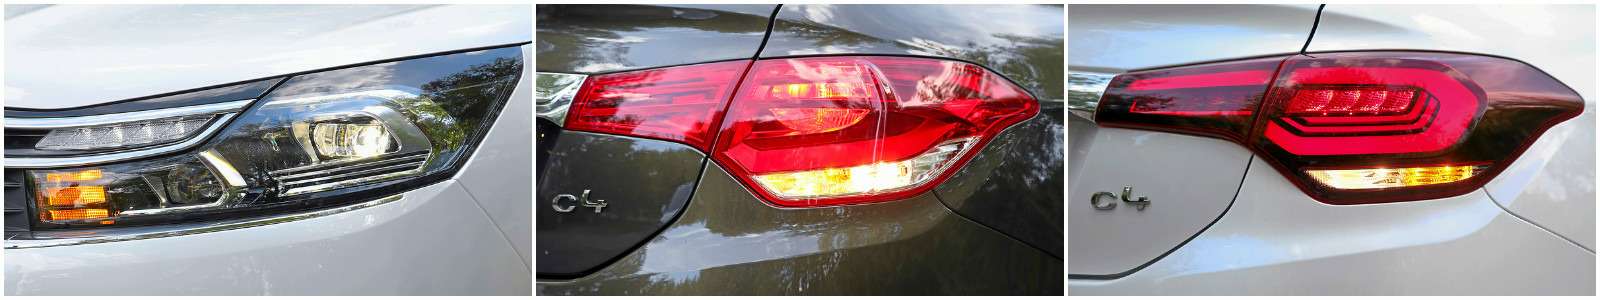 Обновленный Citroen C4 sedan: да будет свет! — фото 640468